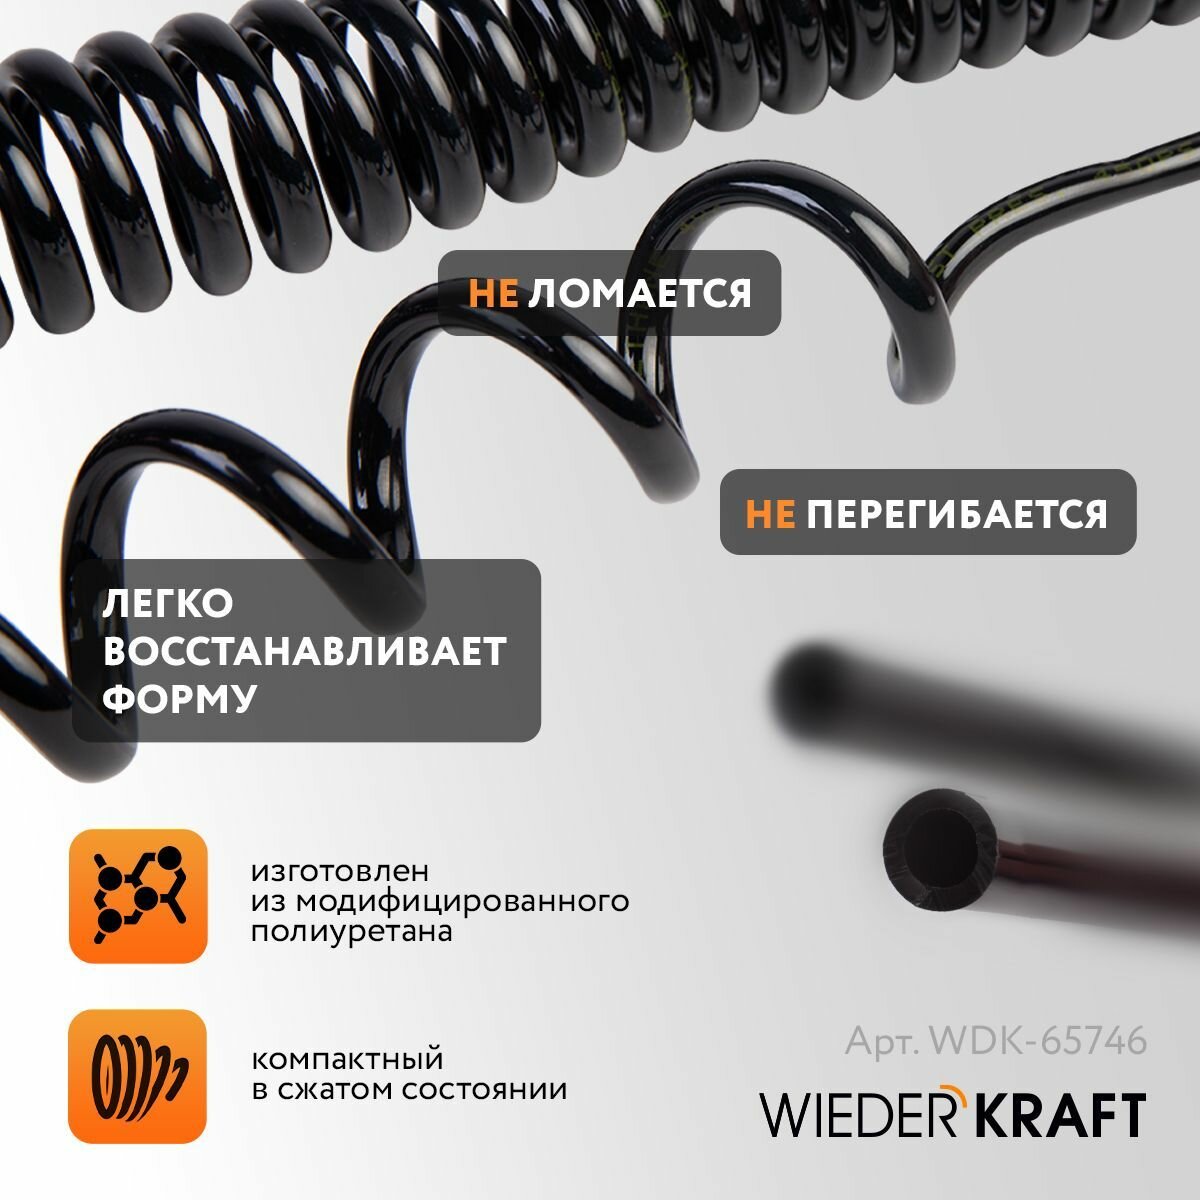 Шланг спиральный полиуретан WIEDERKRAFT 4*6mm 5 метров WDK-65746